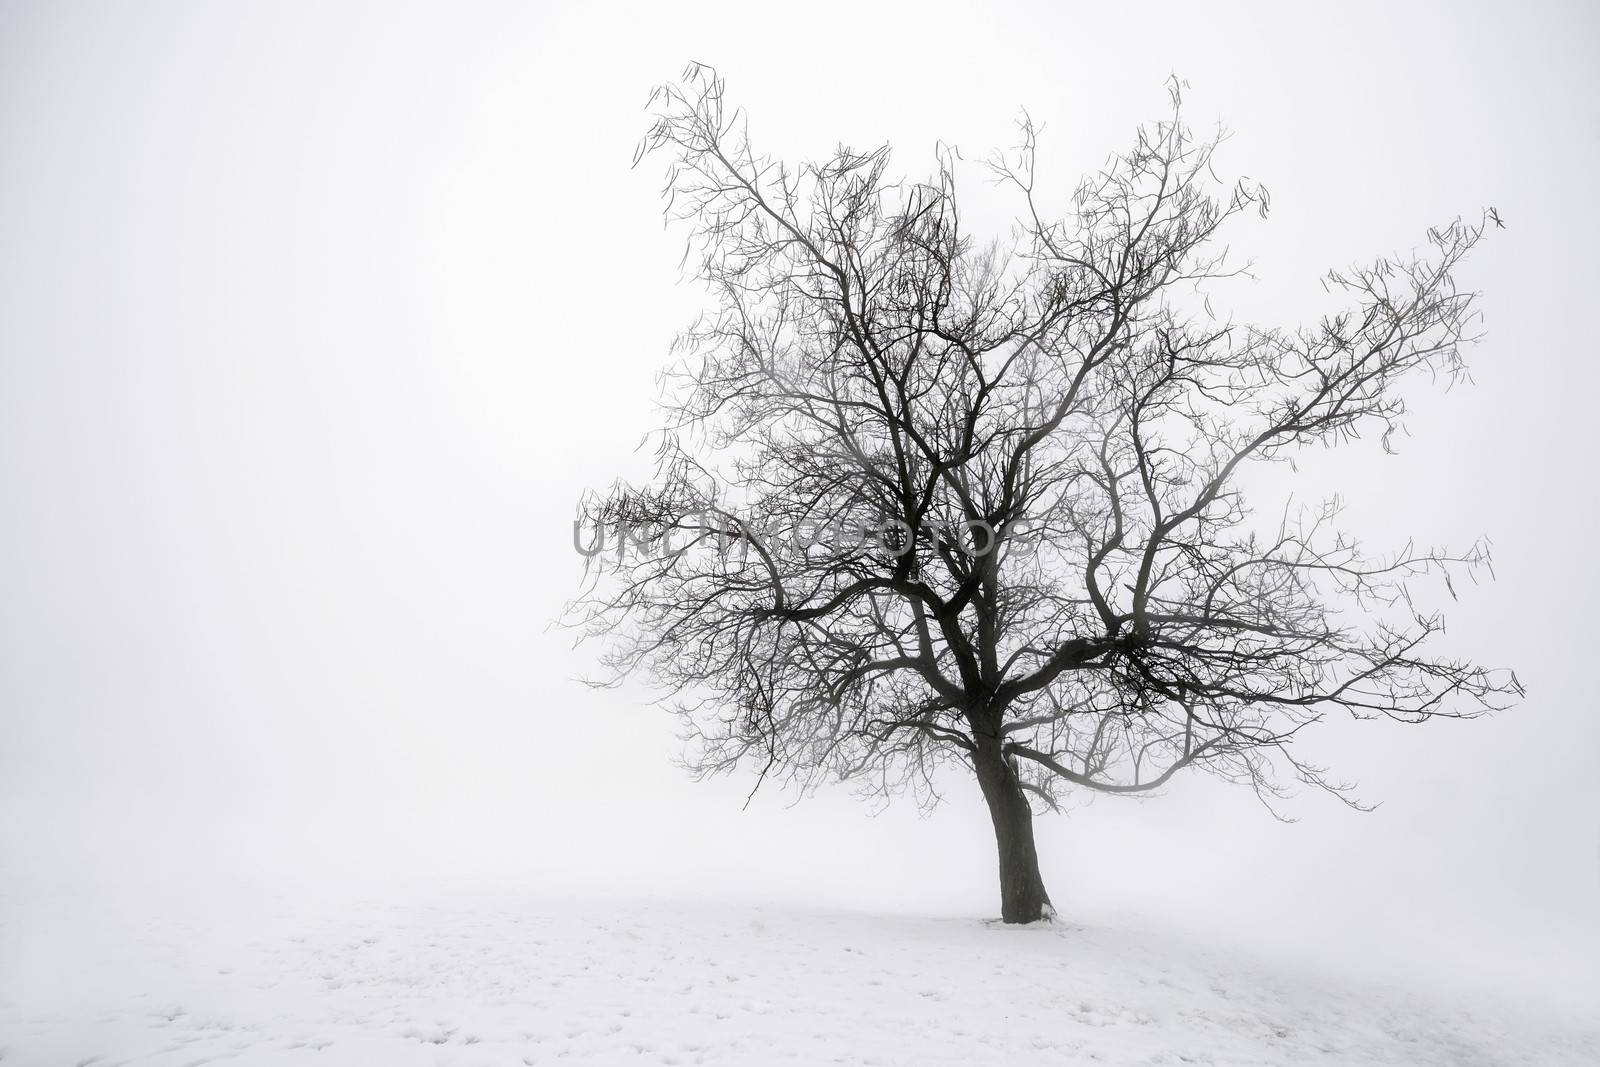 Winter tree in fog by elenathewise